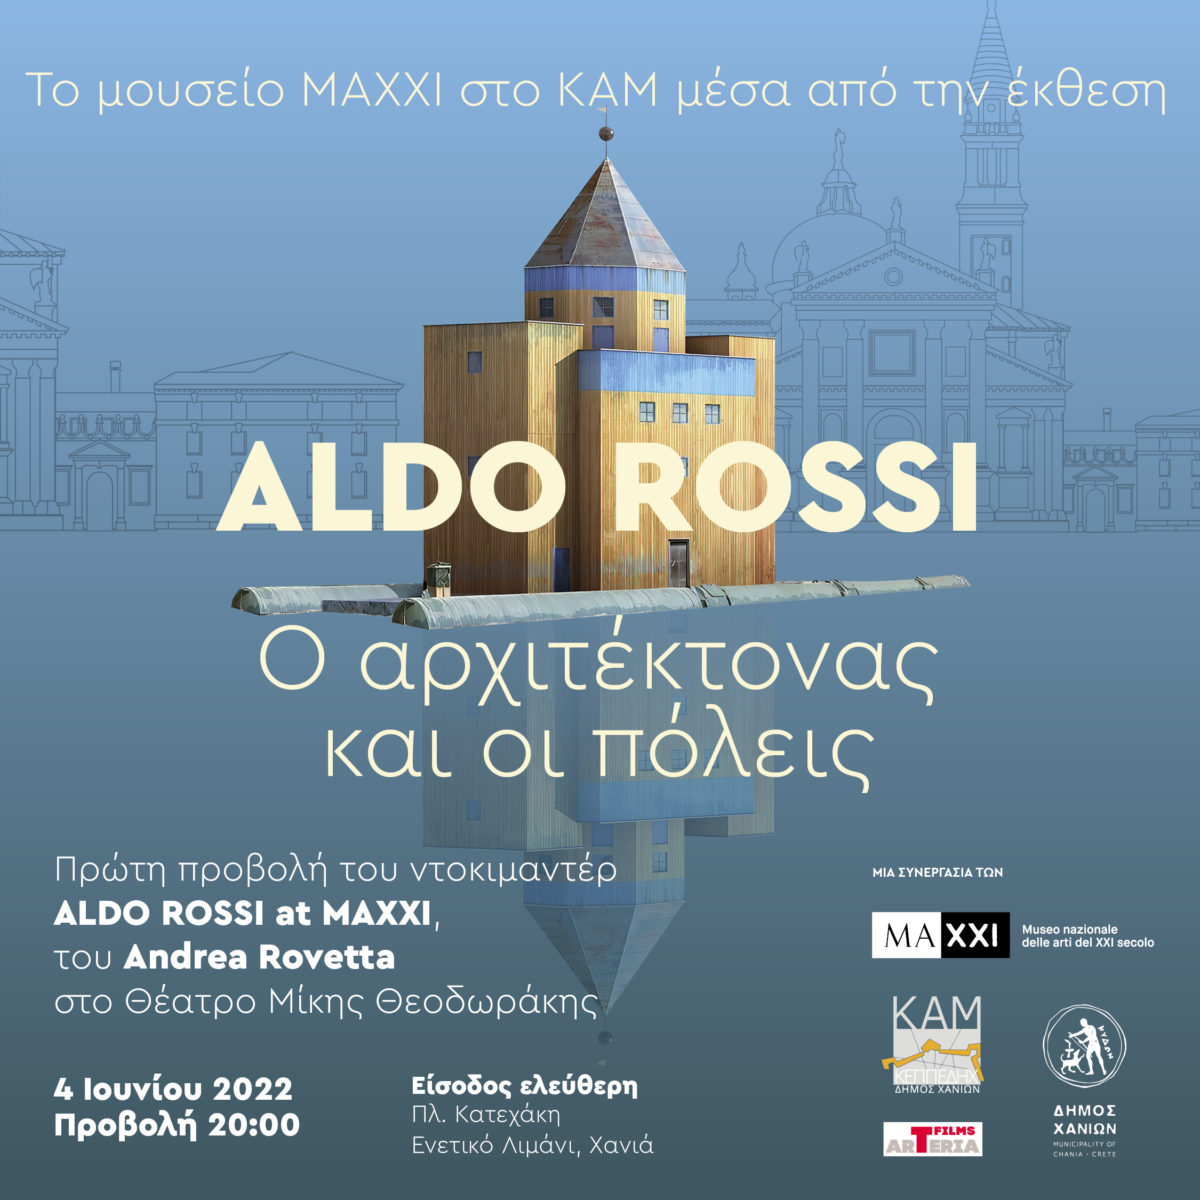 Προβολή-Διάλεξη και εργαστήριο : “Το μουσείο MAXXI στο ΚΑΜ μέσα από την έκθεση ALDO ROSSI: Ο αρχιτέκτονας και οι πόλεις”